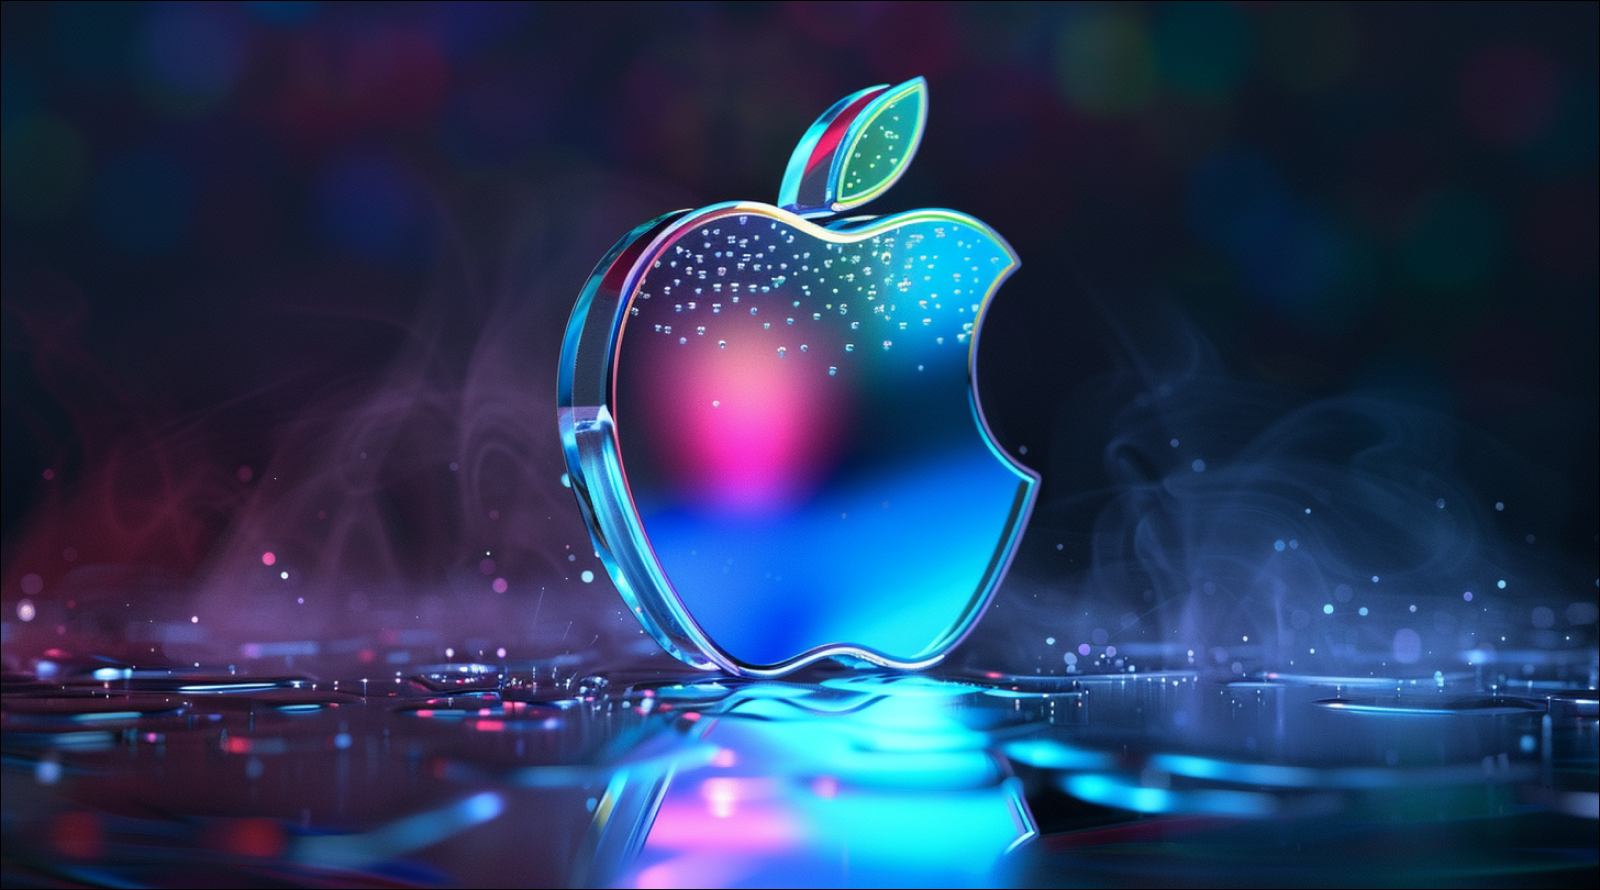 Ein dreidimensionales Apple-Logo in leuchtenden Neonfarben auf einem reflektierenden Untergrund